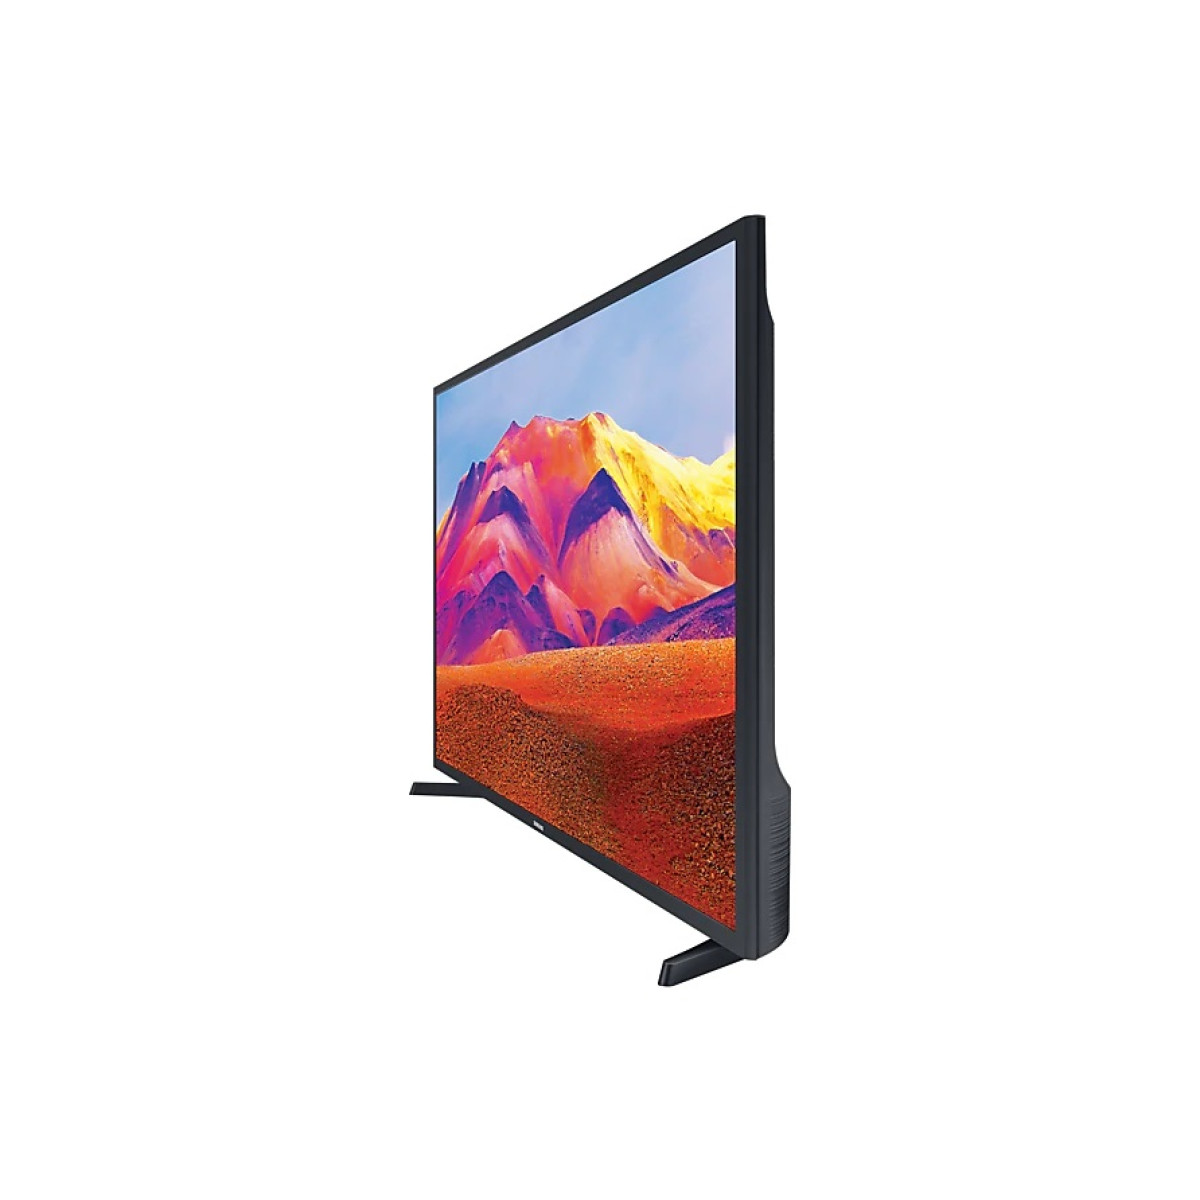 Τηλεόραση Samsung Smart LED UE32T5302 HDR 32" Full HD  Τηλεοράσεις